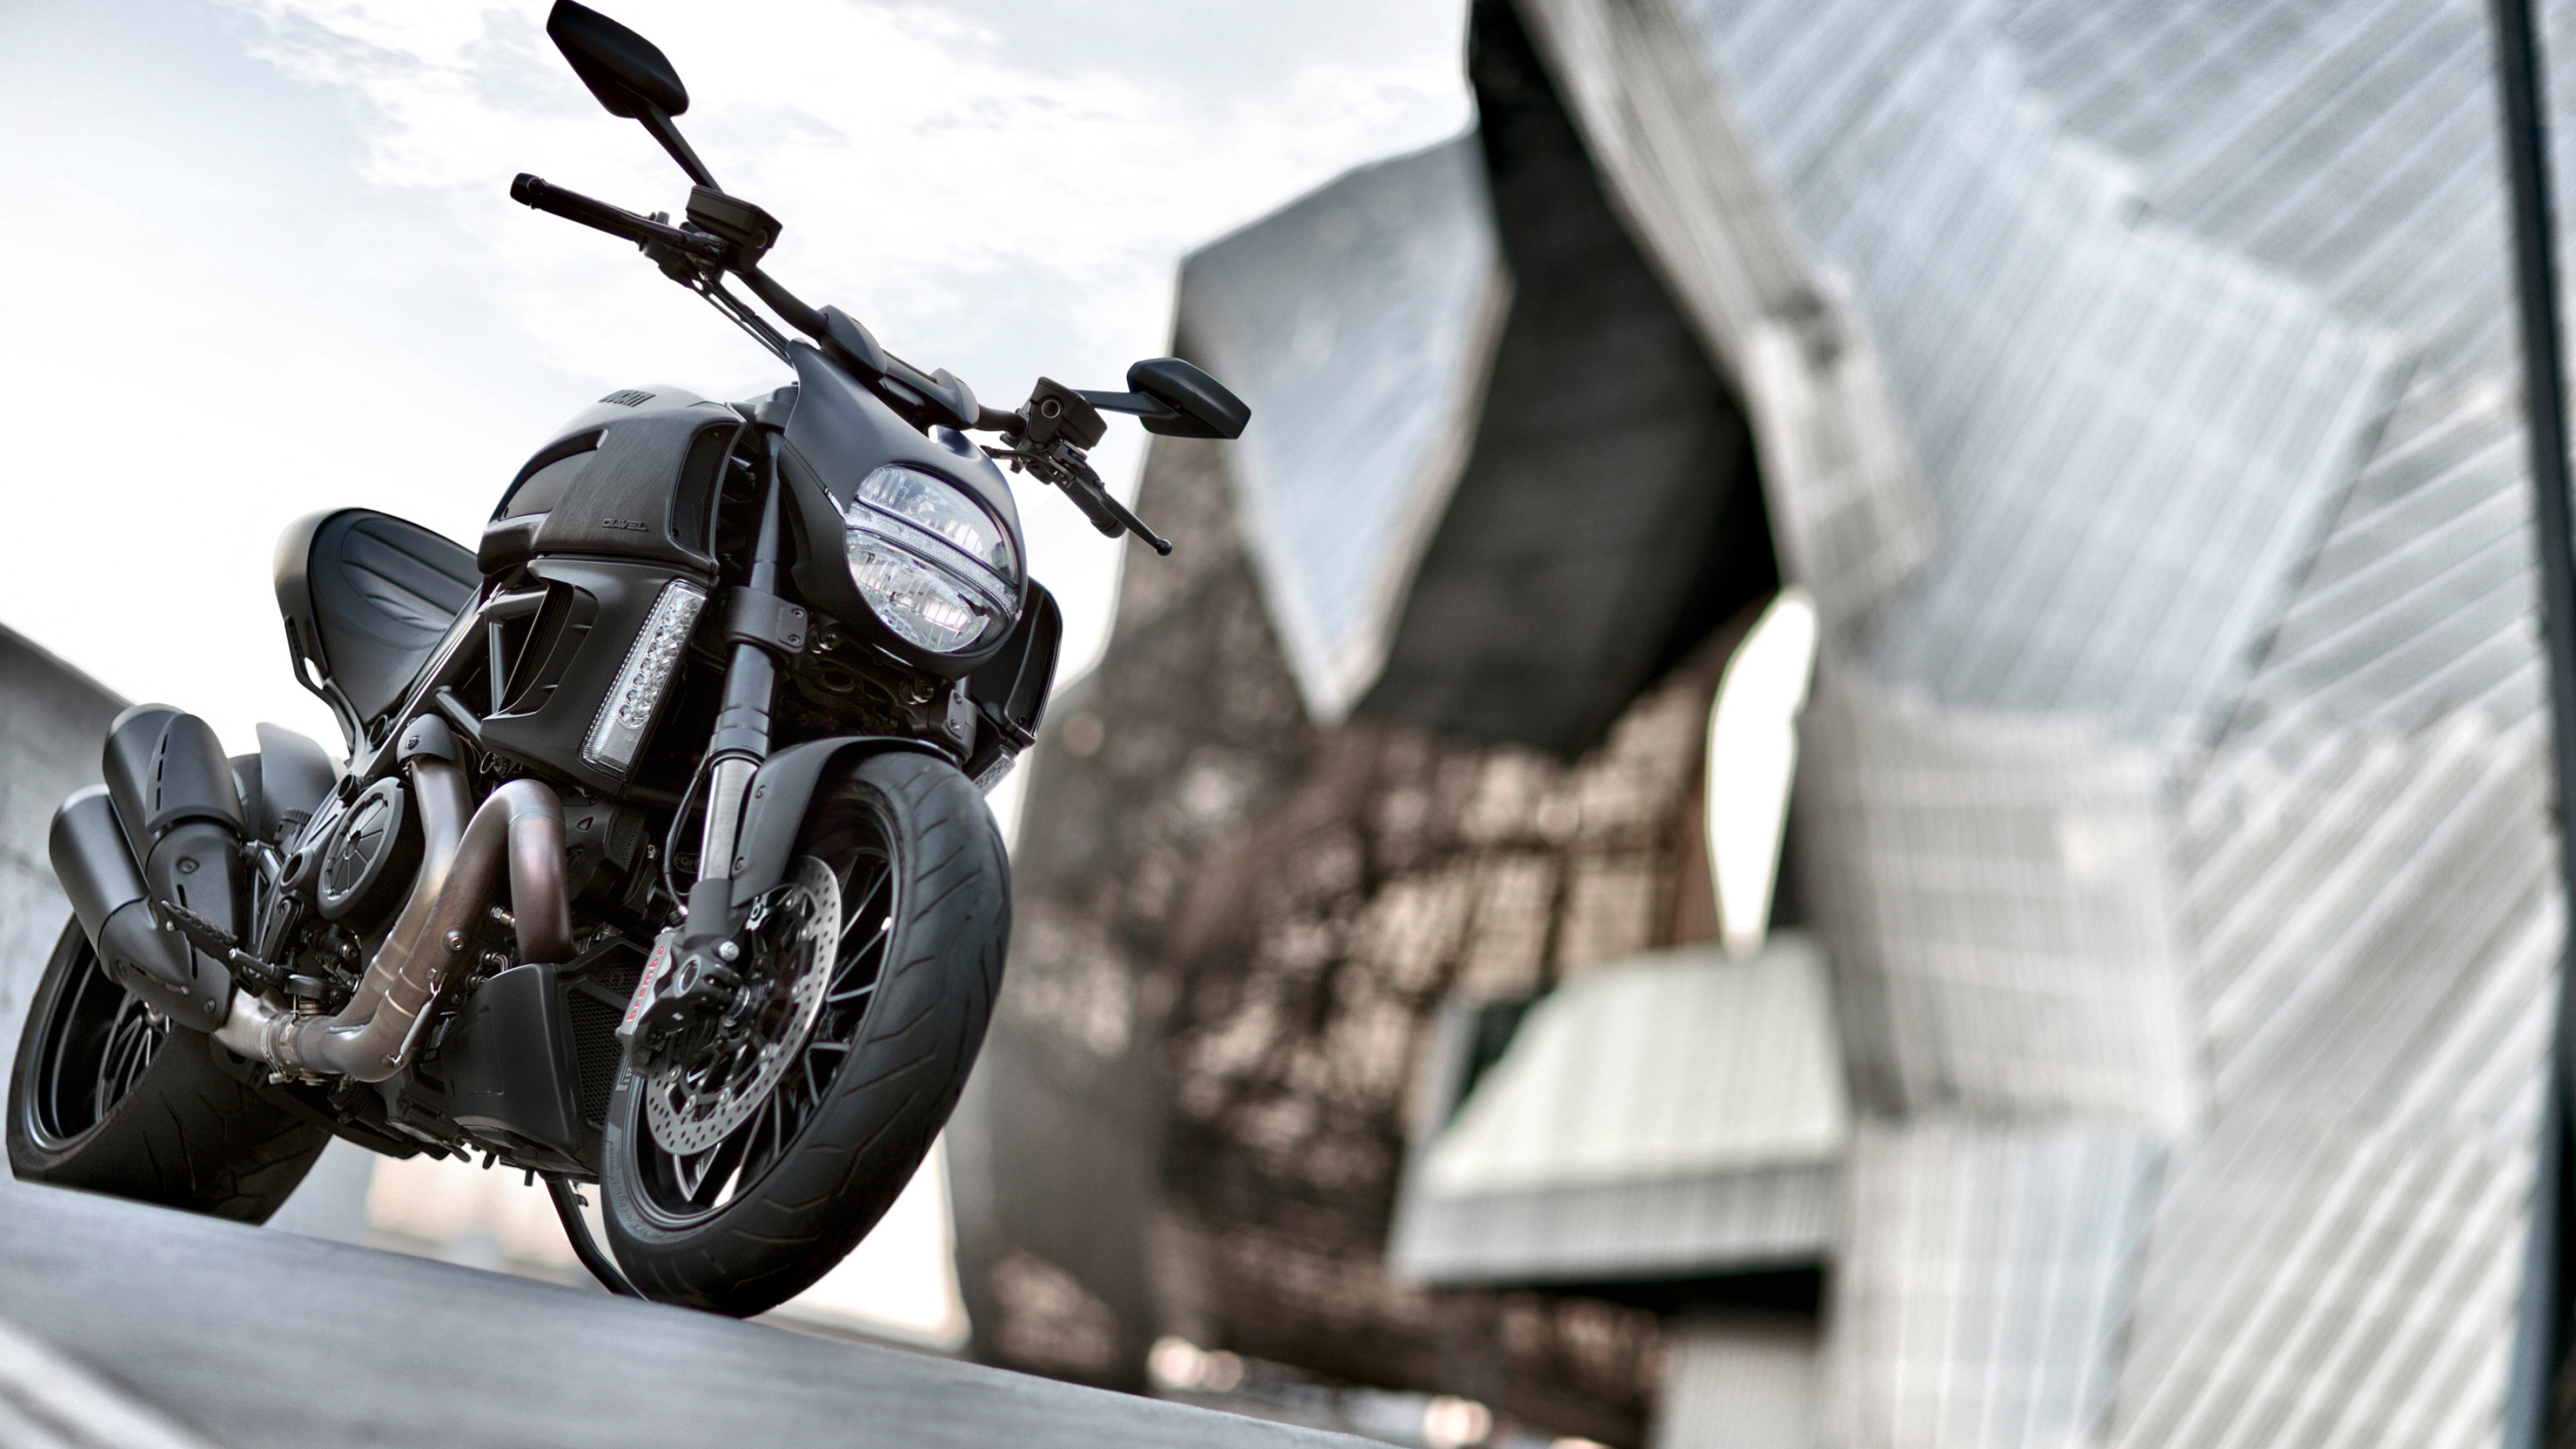 Ducati XDiavel, Thrilling ride, Cruiser bike, Unbridled power, 3840x2160 4K Desktop